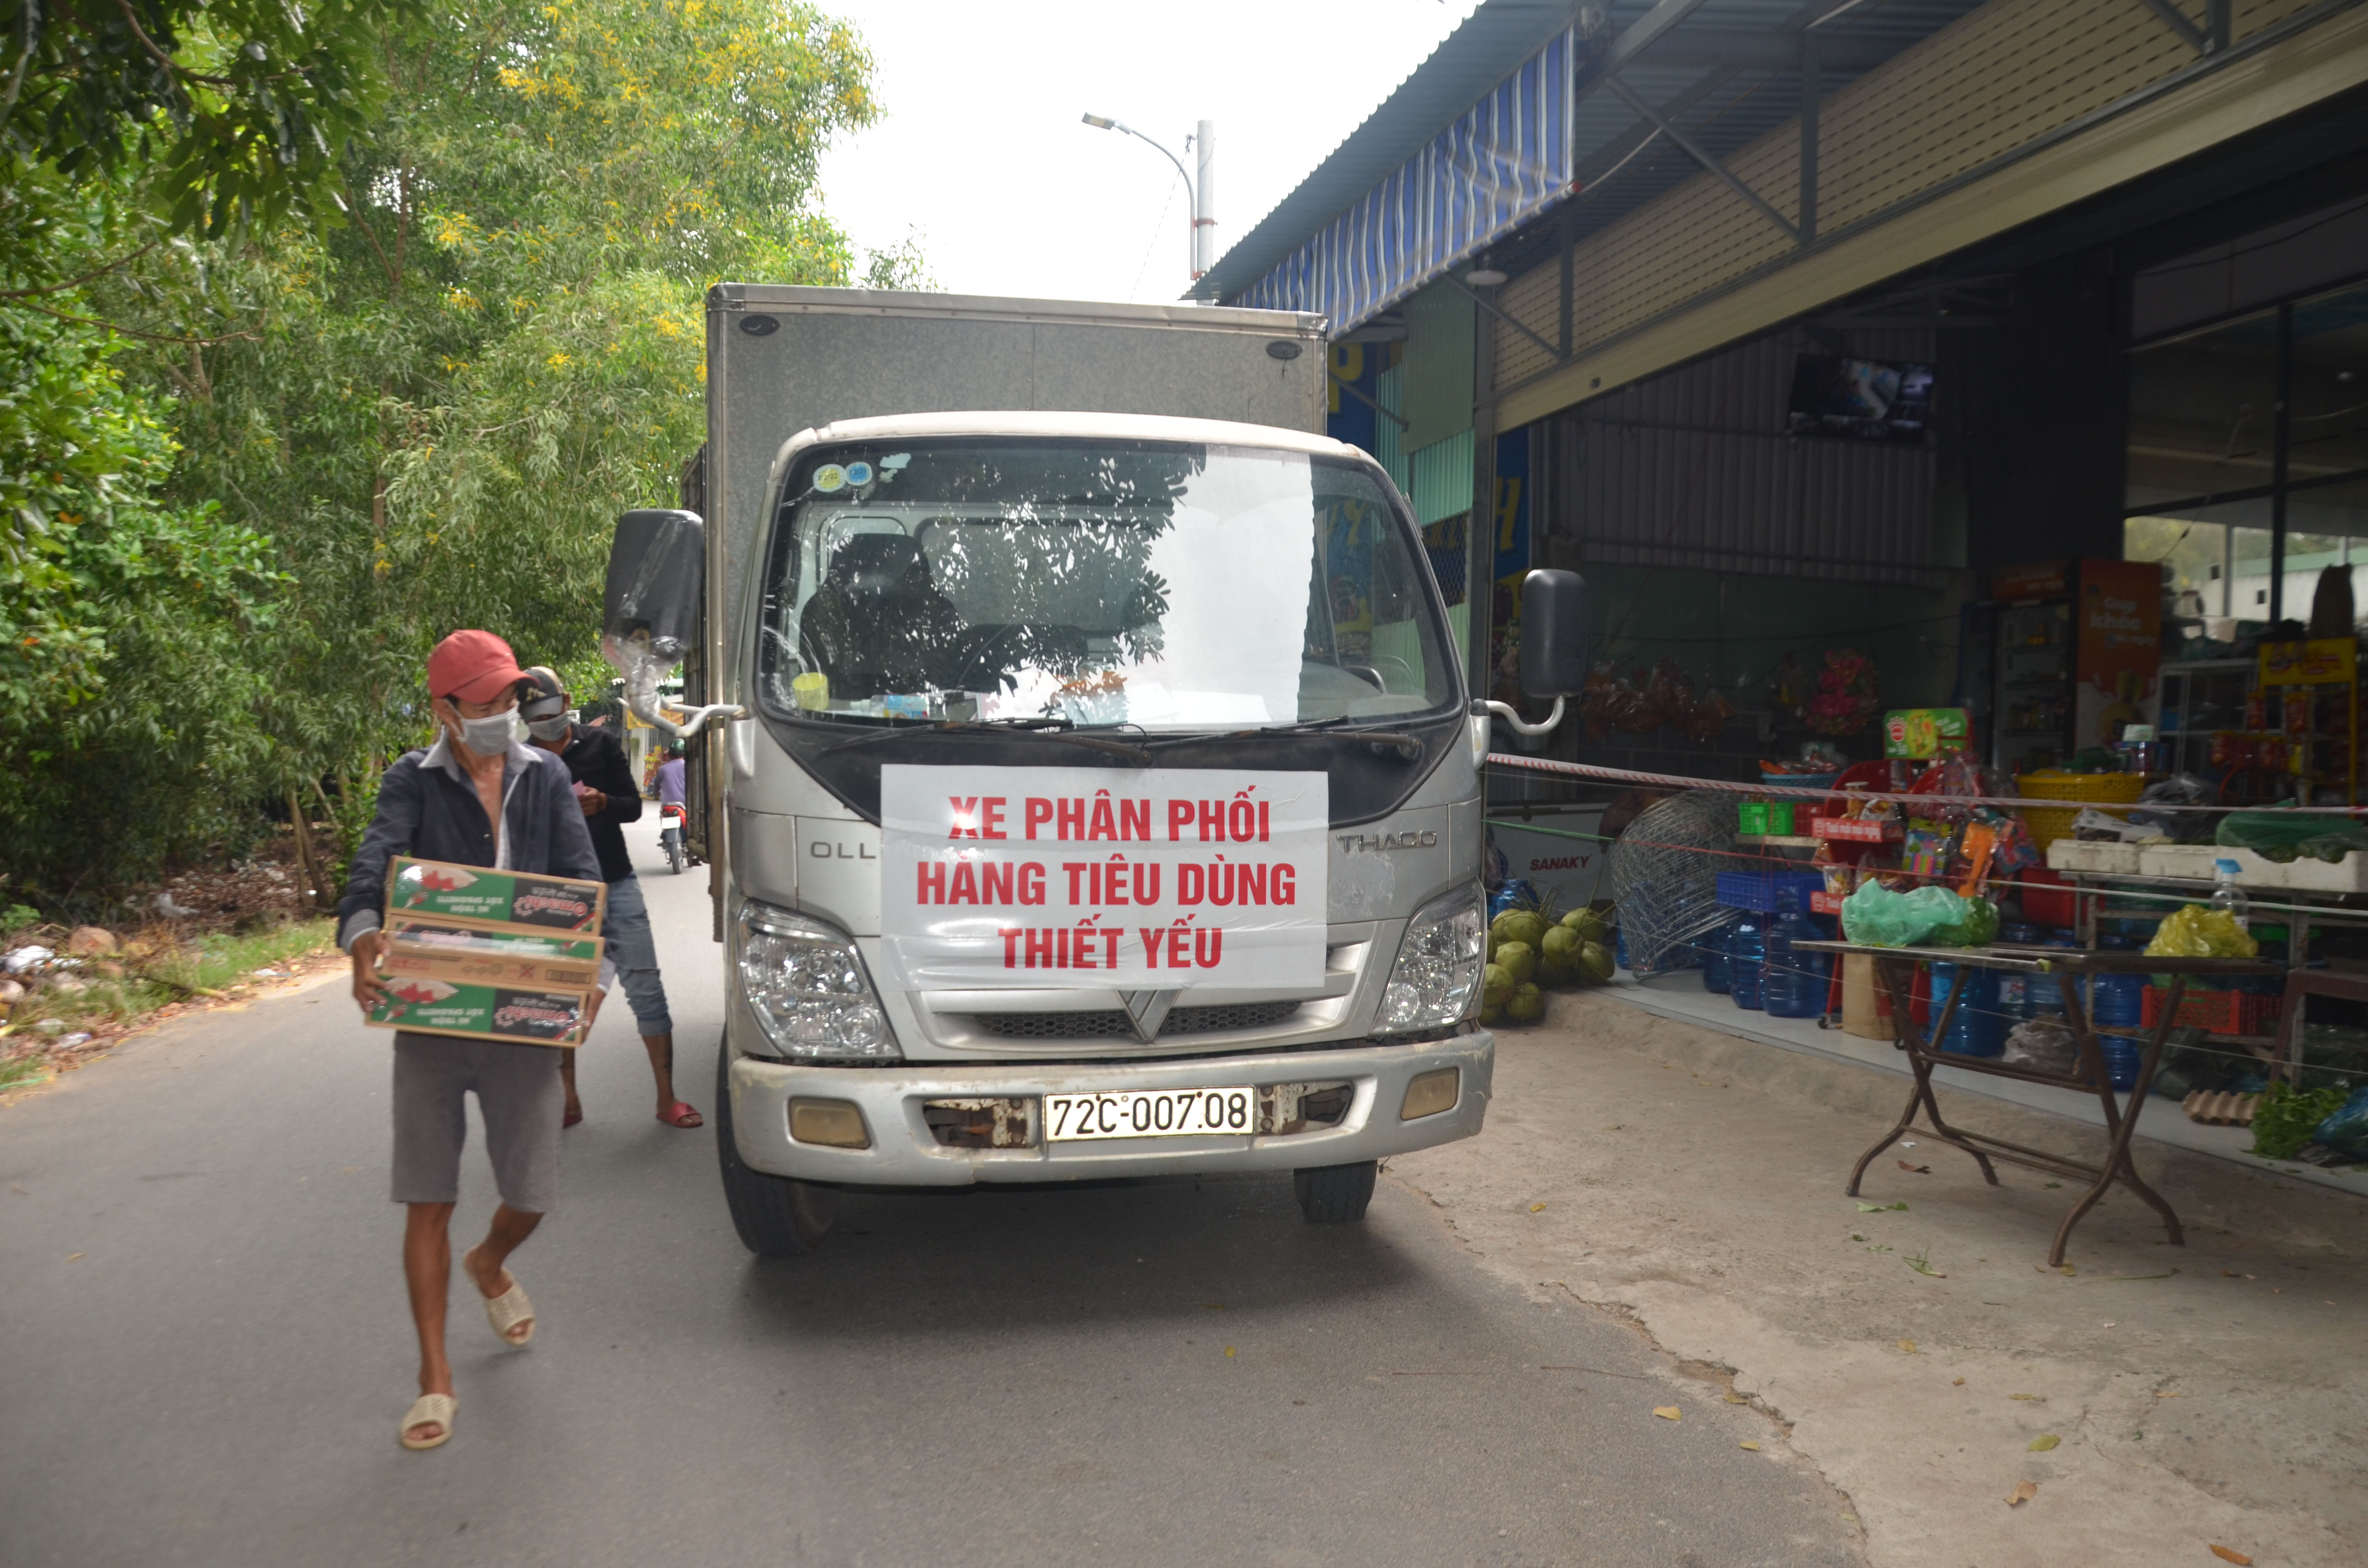 Xe phân phối hàng tiêu dùng thiết yếu cung cấp hàng cho các cửa hàng tạp hóa trên địa bàn xã Long Sơn.